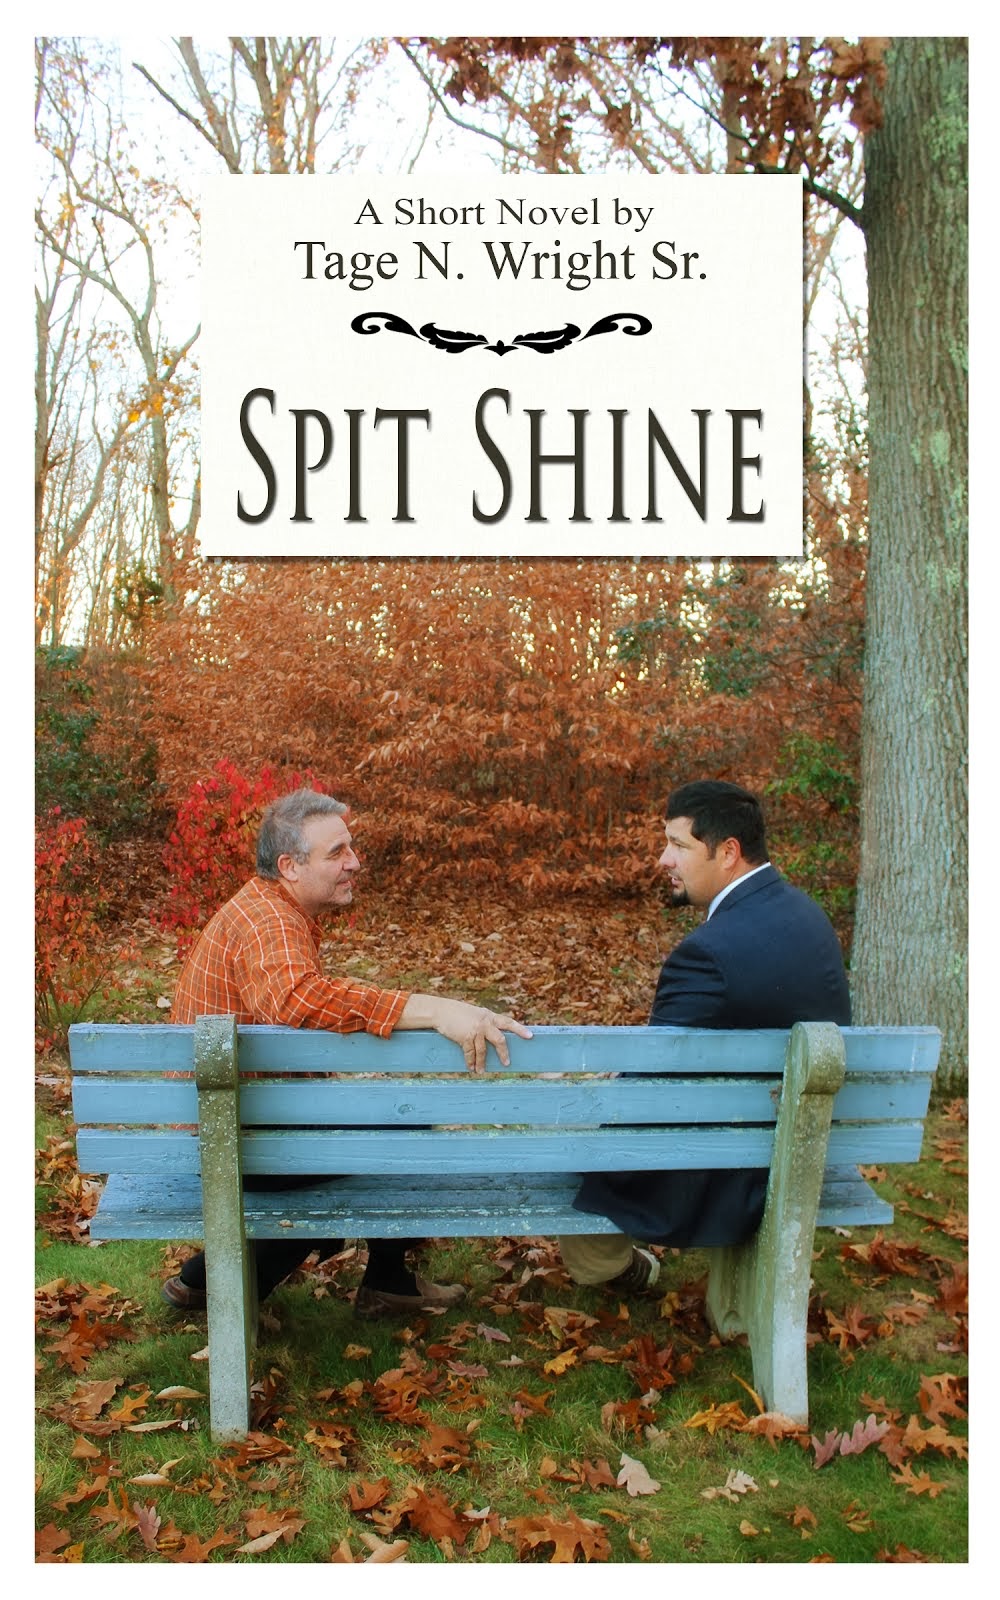 My New Short Novel: "Spit Shine"